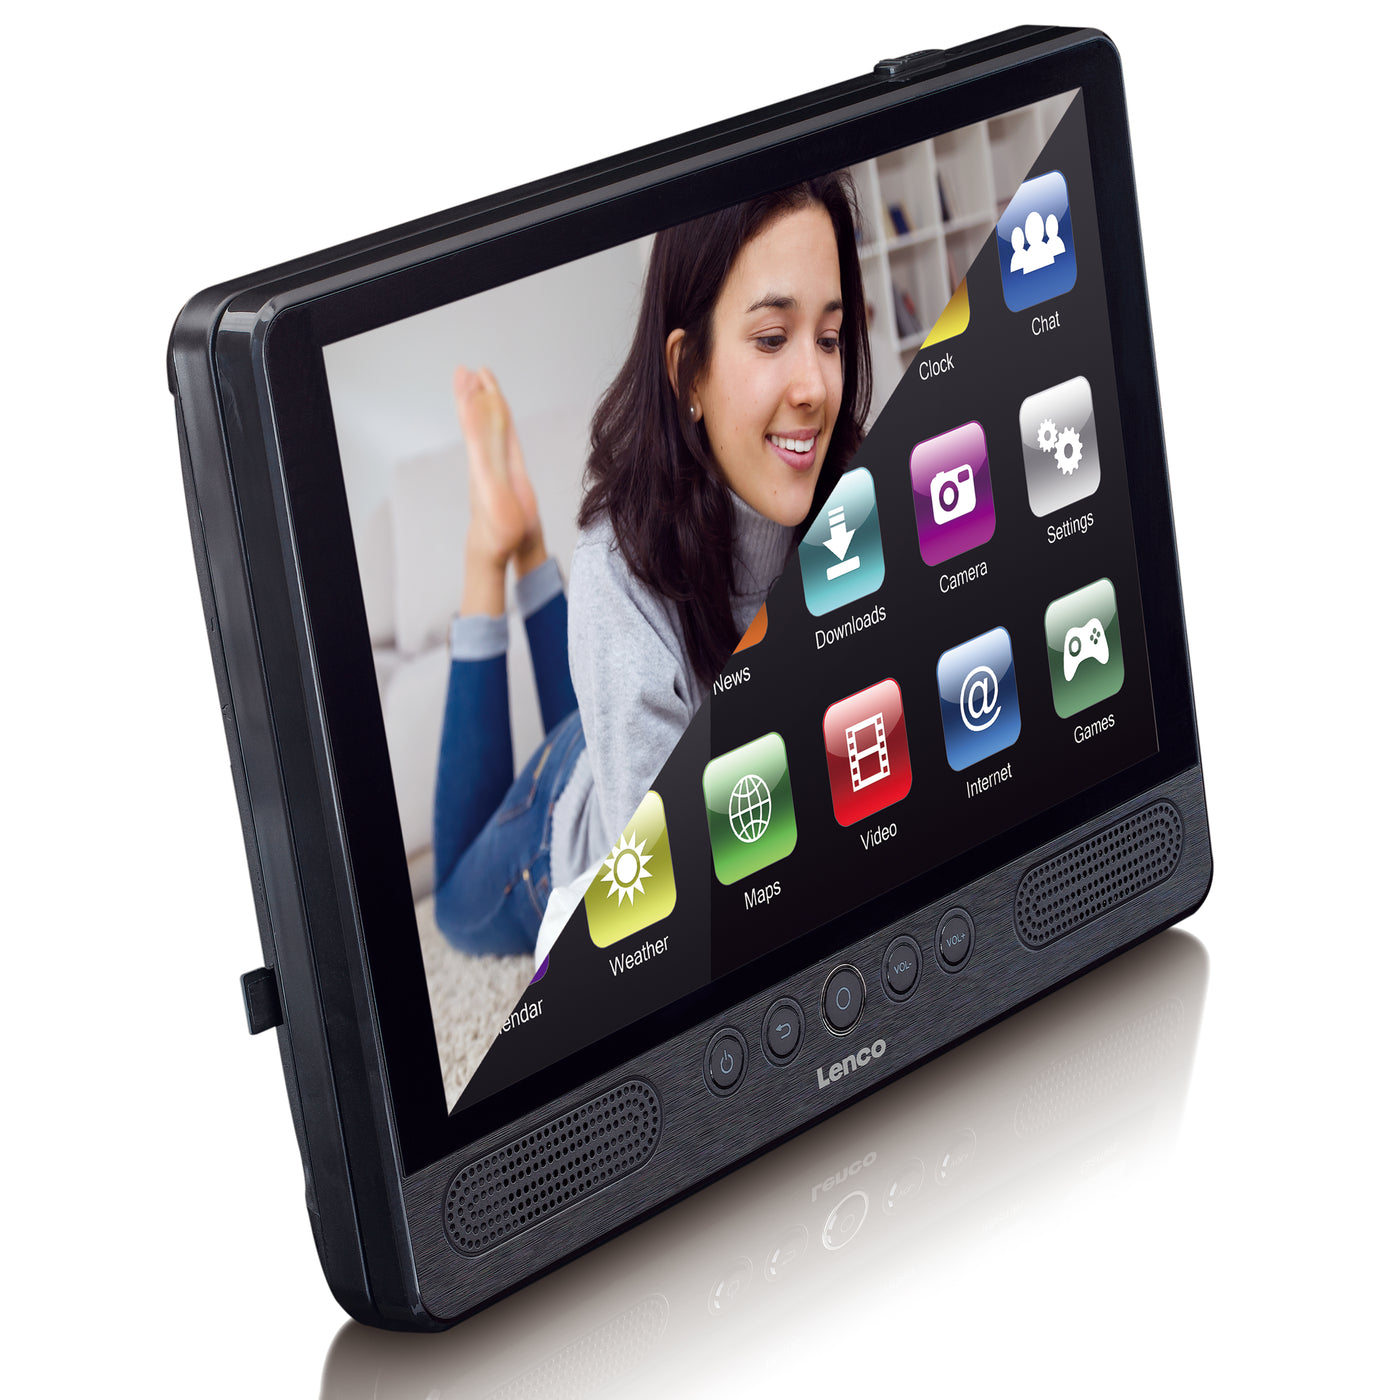 LENCO TDV-1000BK 10-inch tablet - DVD - WIFI - USB - SD - Black